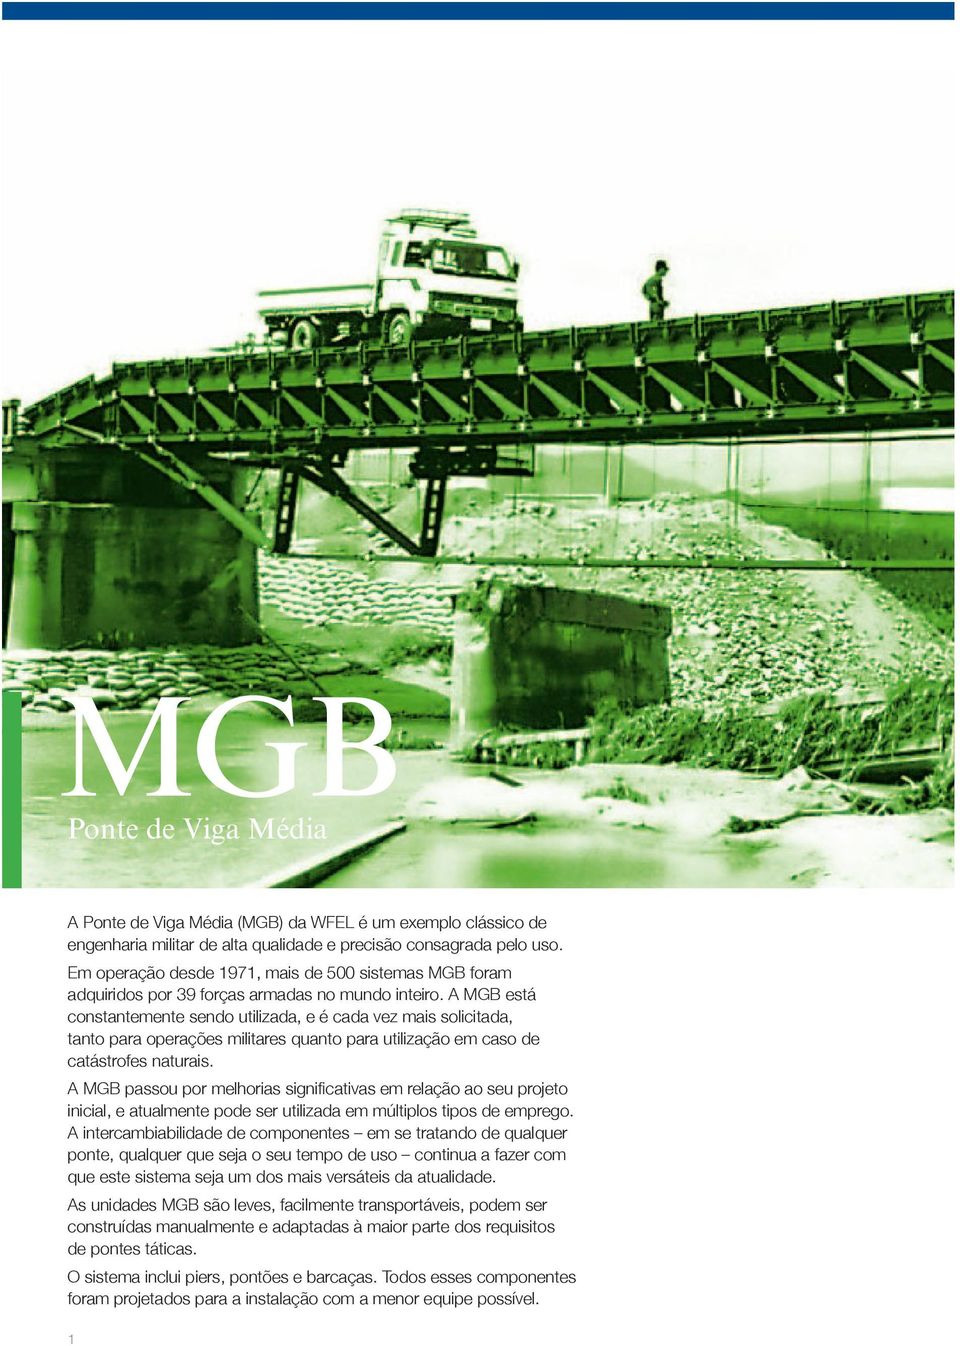 A MGB está constantemente sendo utilizada, e é cada vez mais solicitada, tanto para operações militares quanto para utilização em caso de catástrofes naturais.